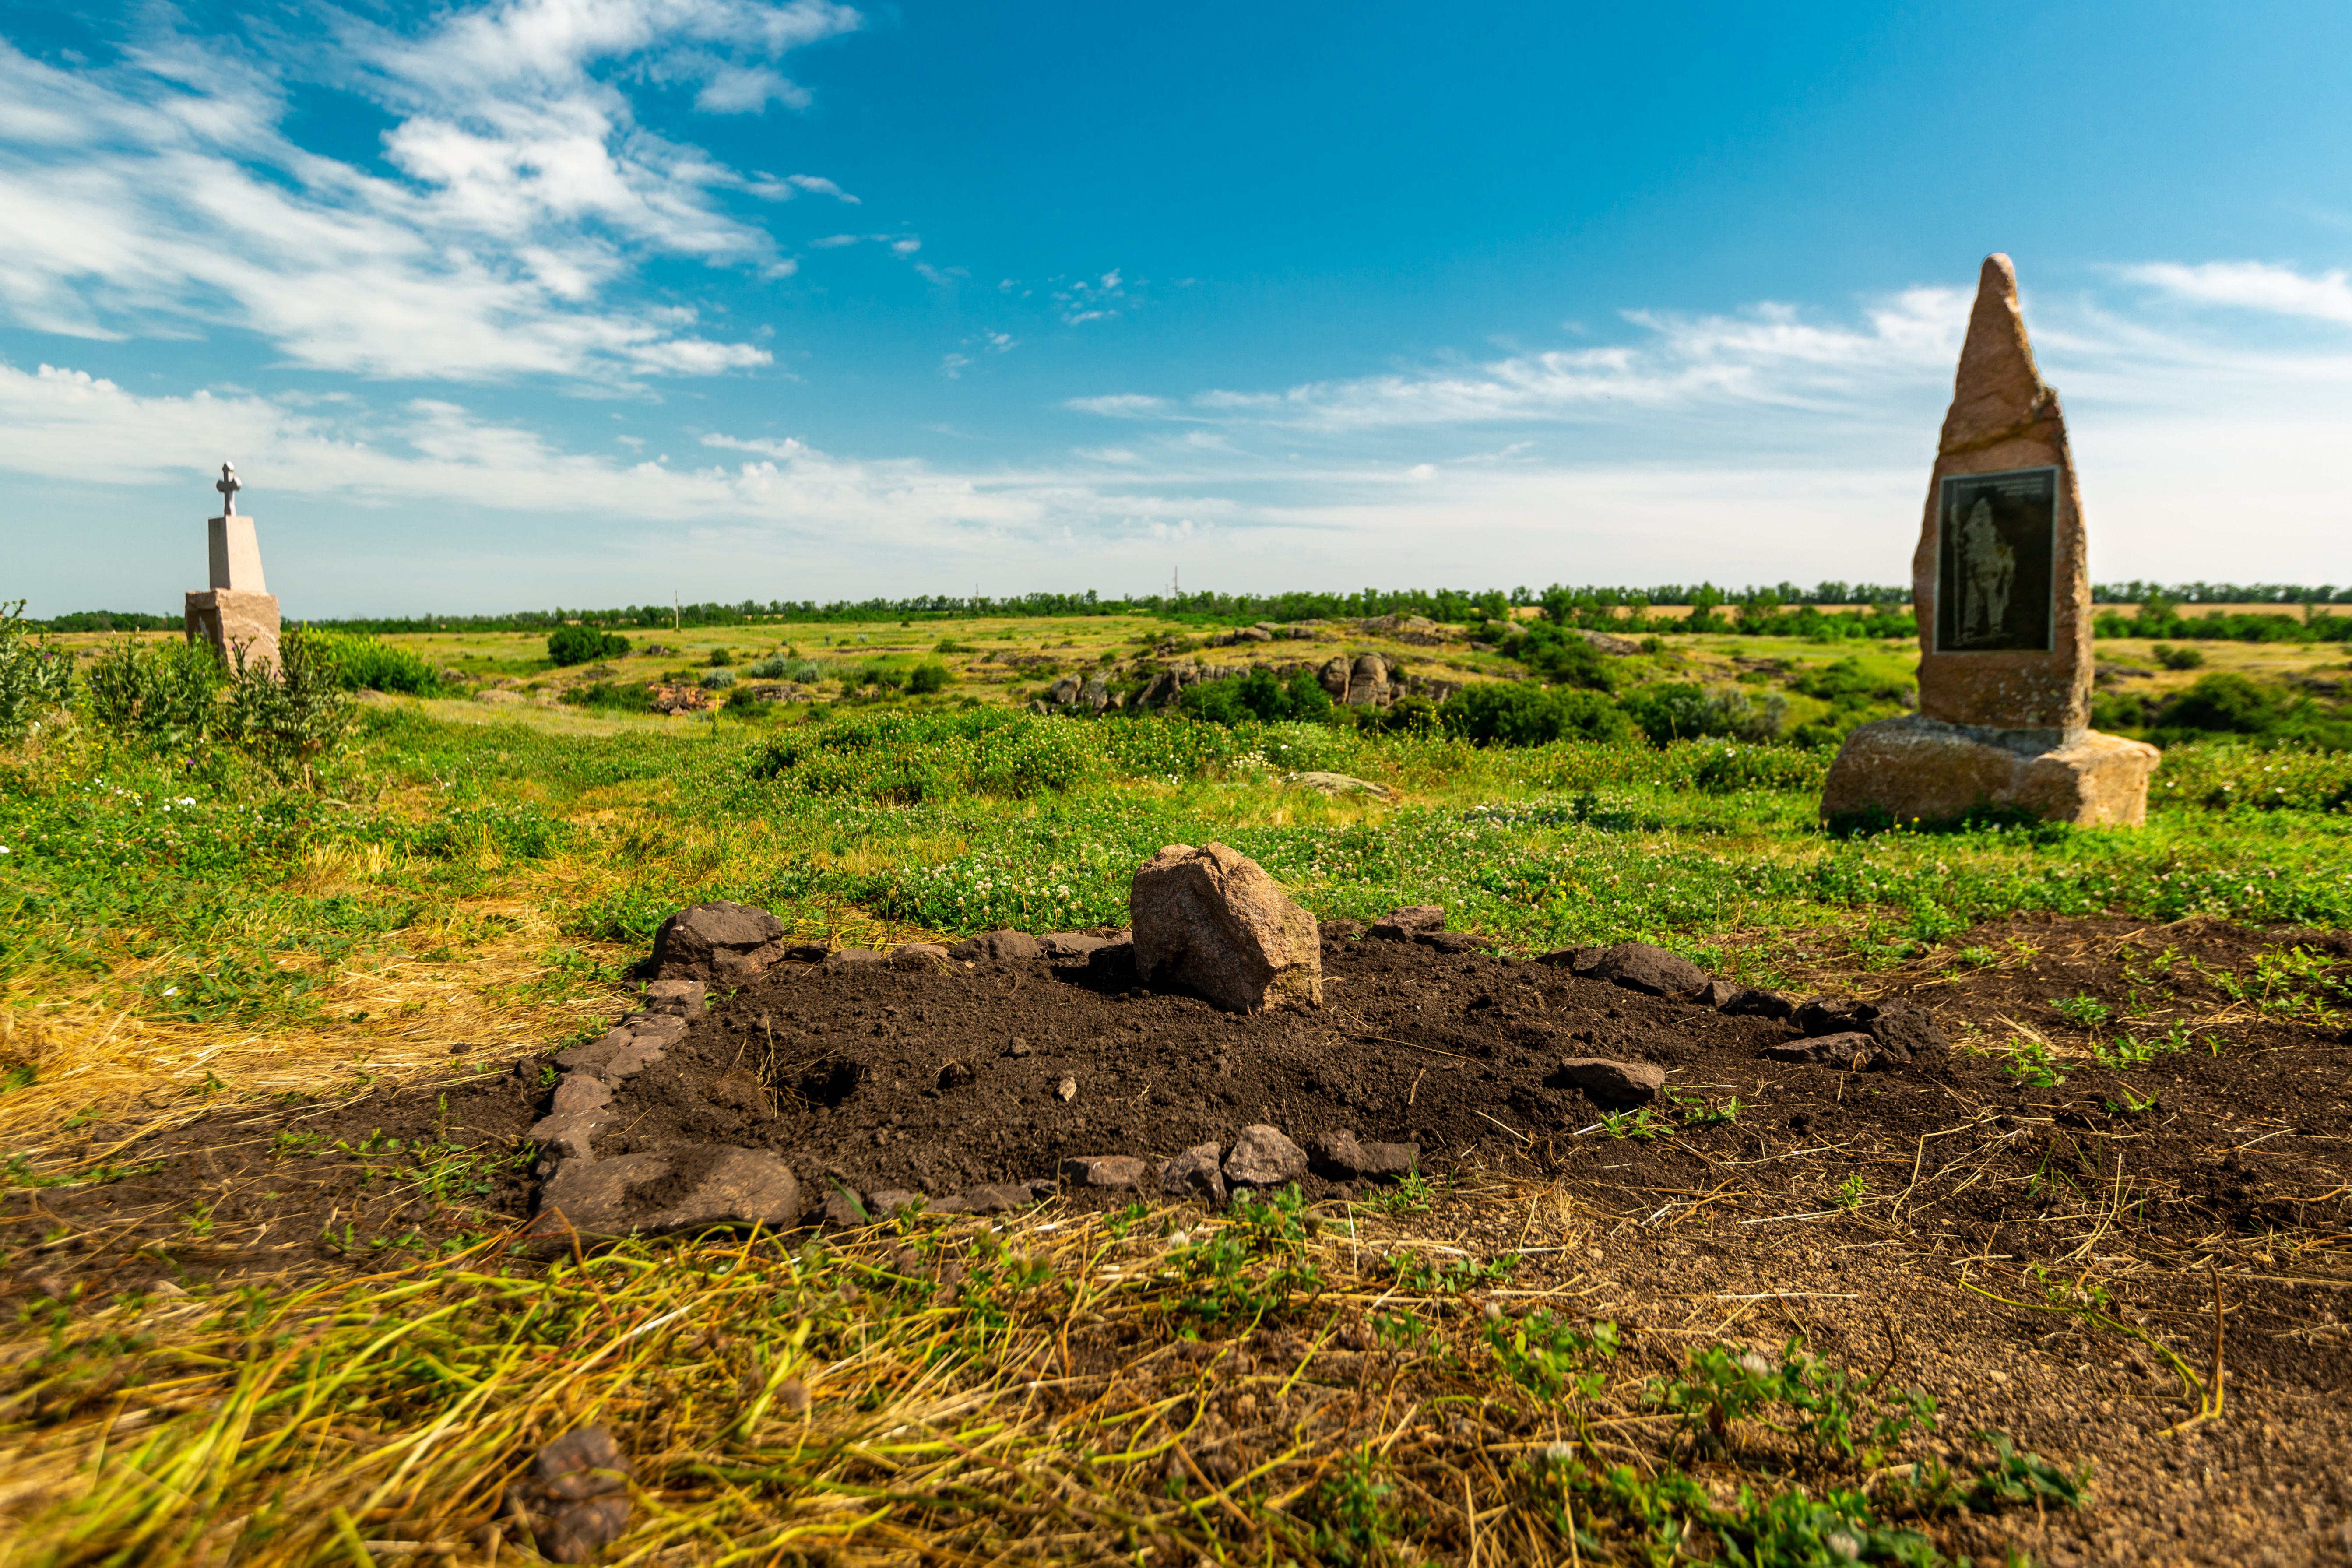 Кам’яна стела доби бронзи, ліпнинний посуд та кістки тварин: що знайшли археологи в селищі Токівське